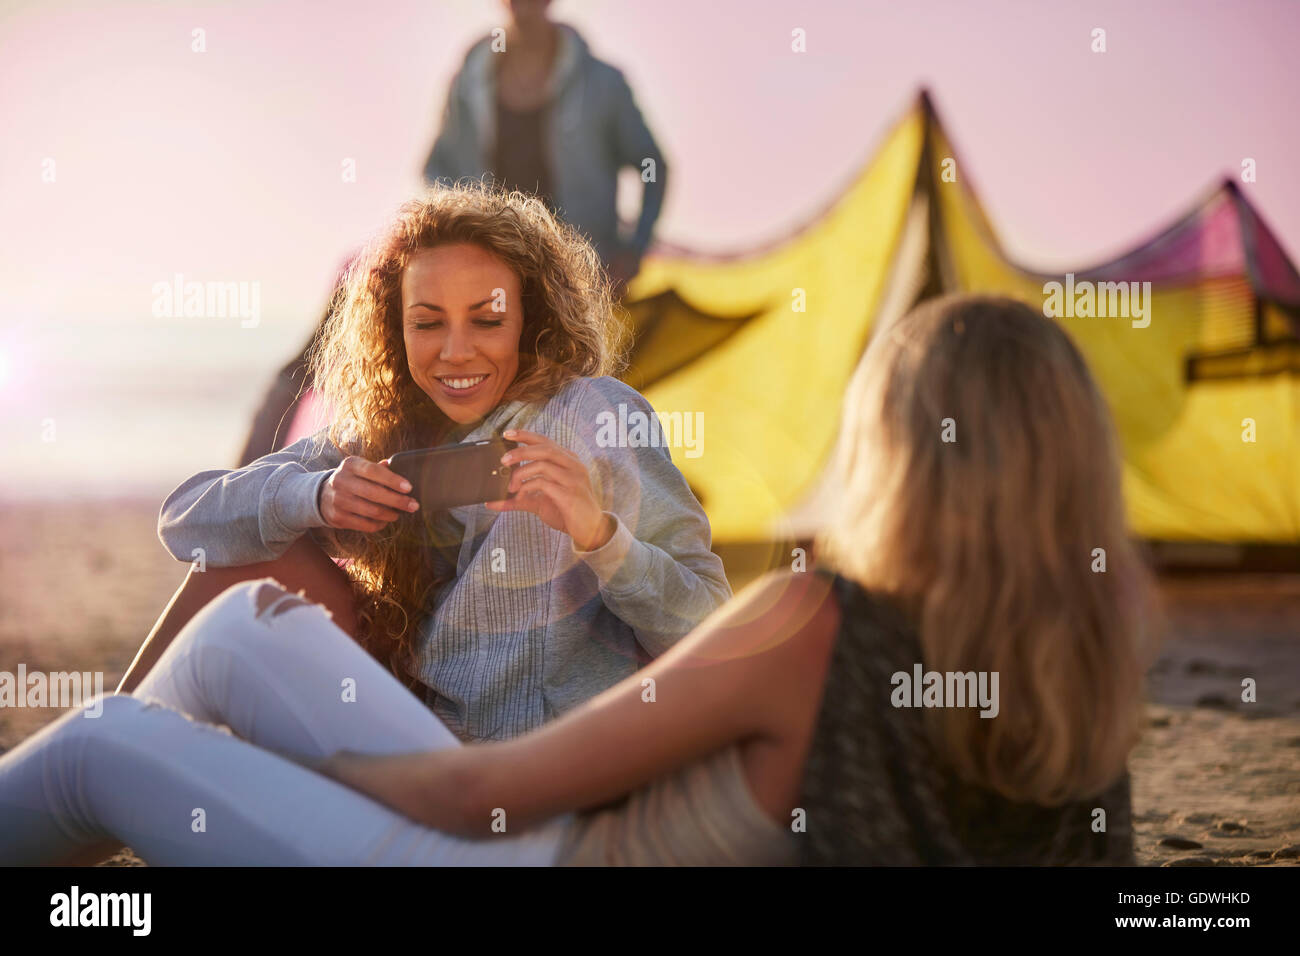 Women using camera phone on beach Stock Photo